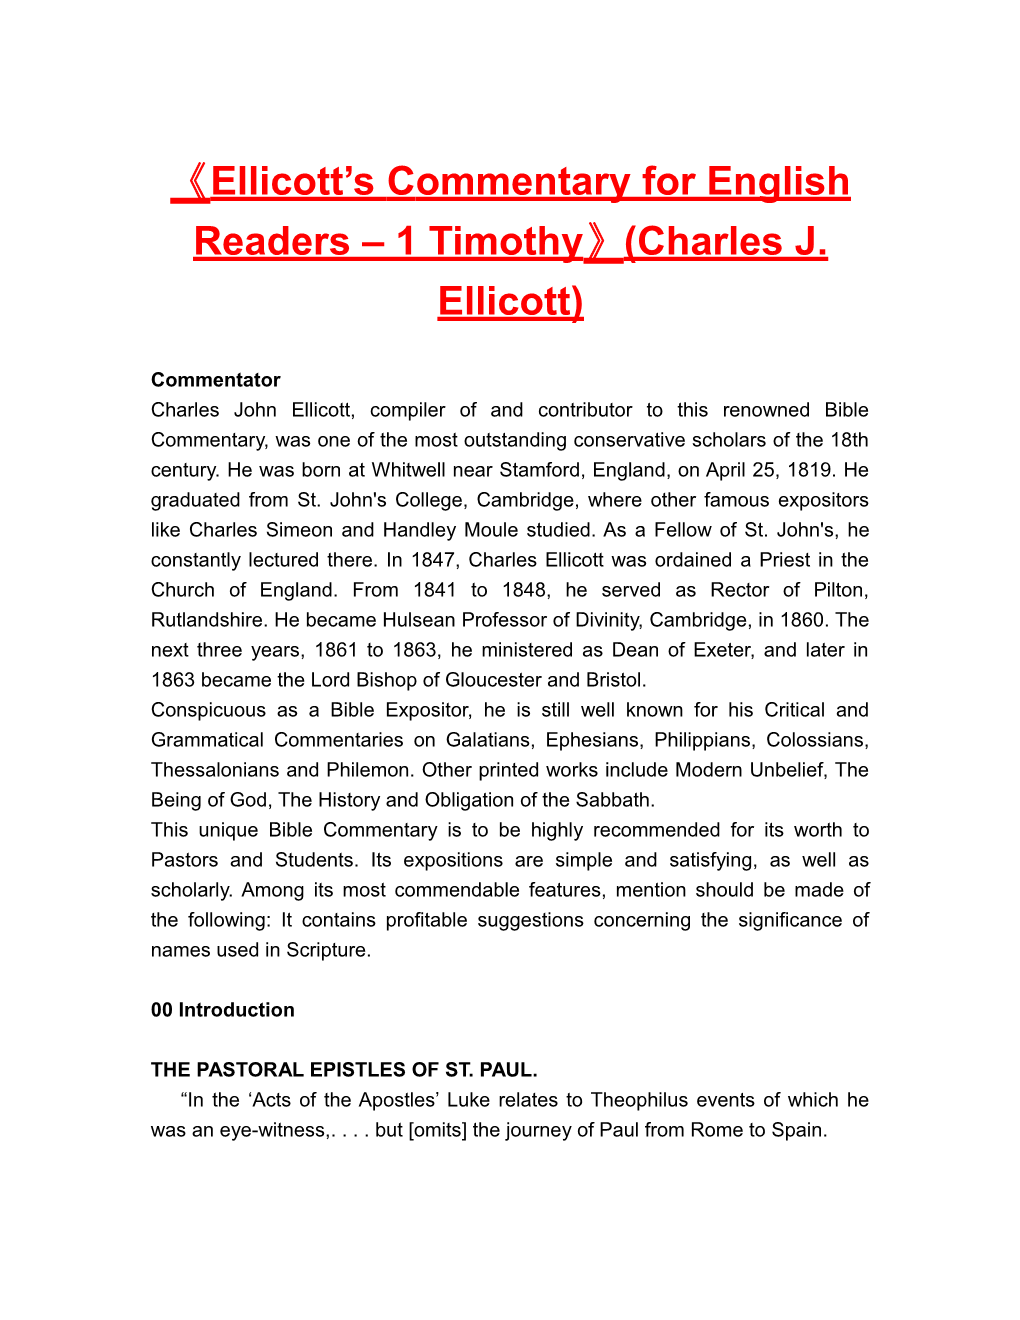 Ellicott Scommentary for English Readers 1 Timothy (Charles J. Ellicott)